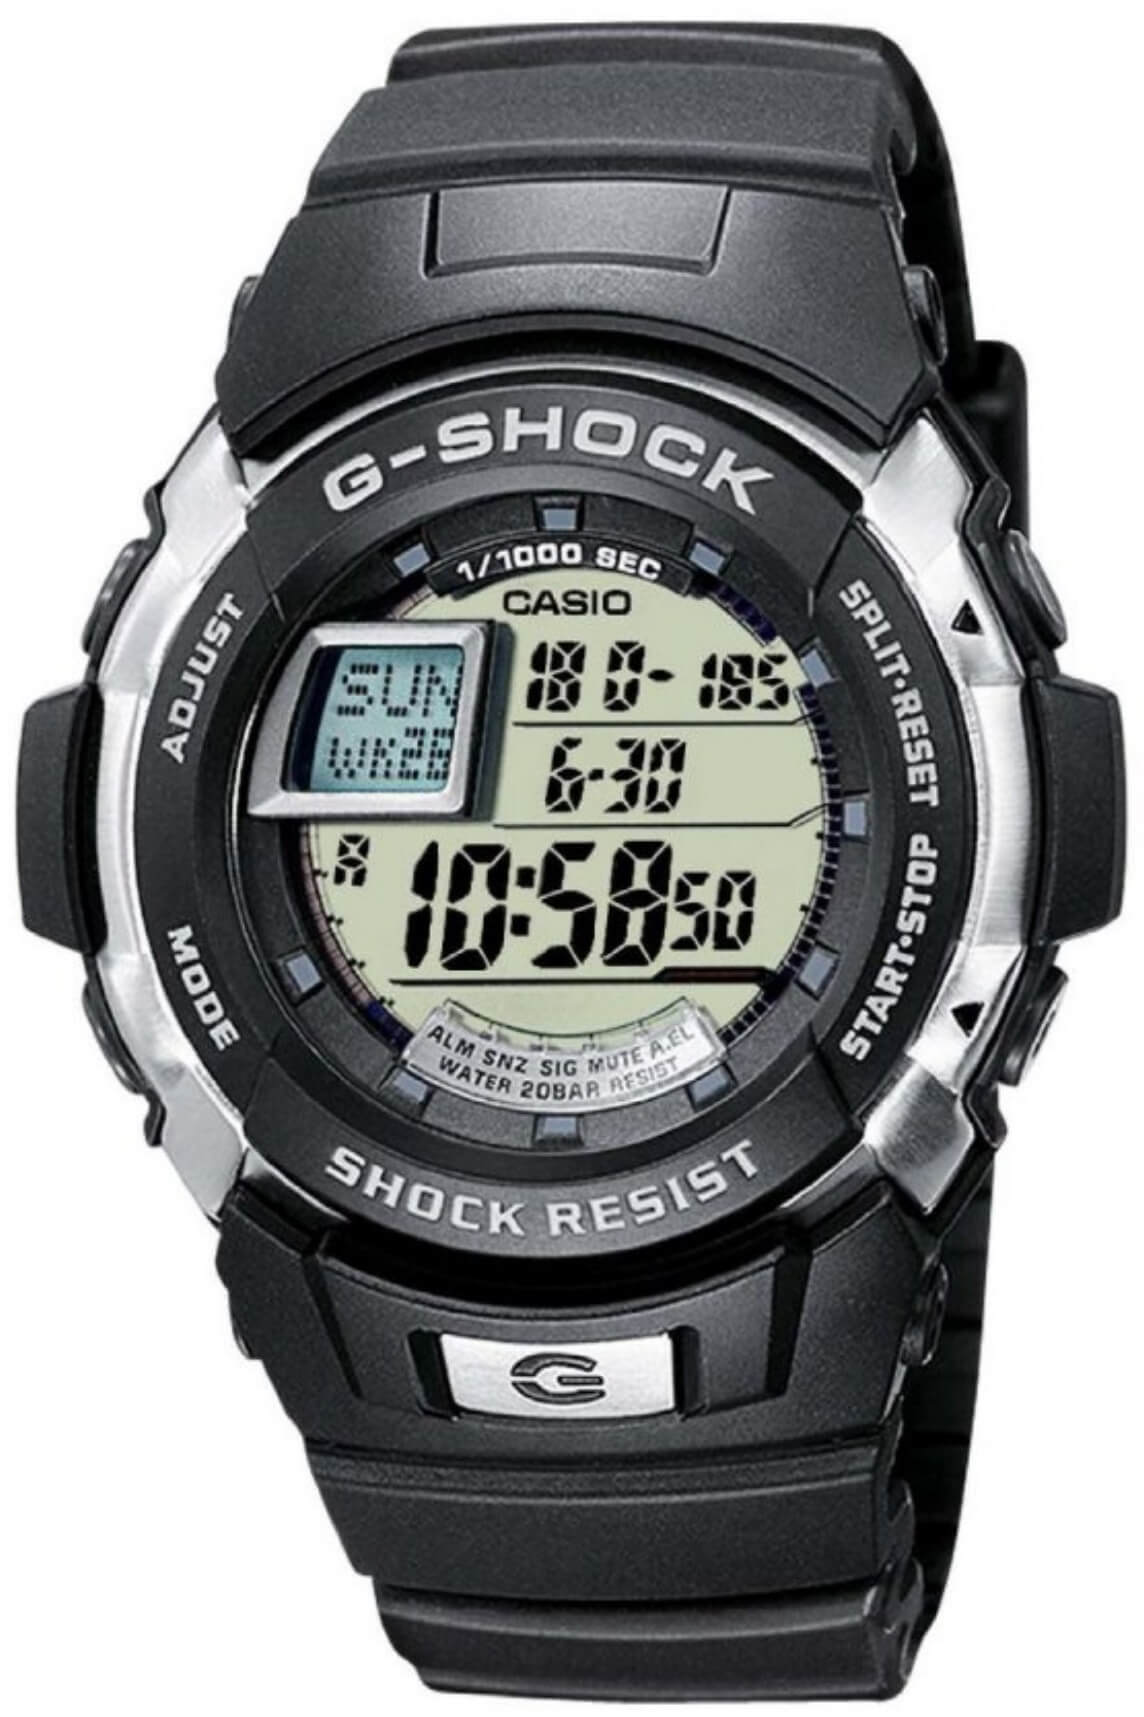 G-shock G-7700-1ER